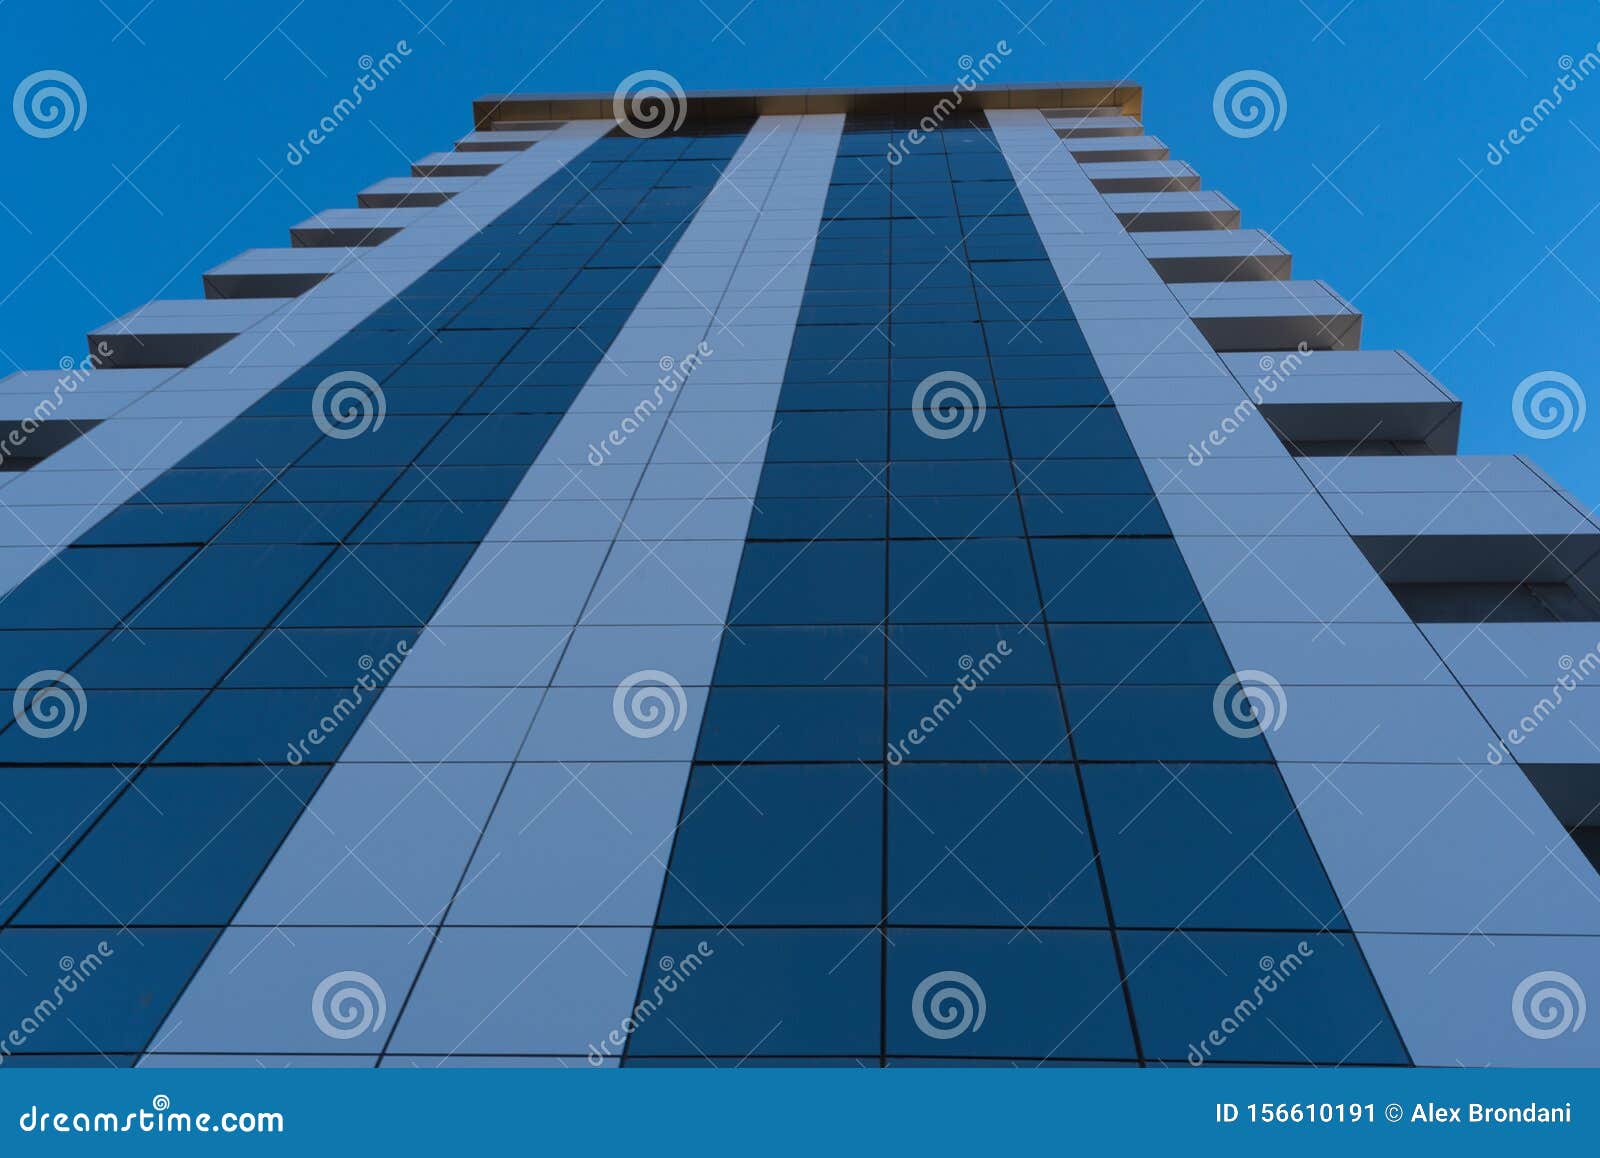 the glazed faÃÂ§ade of the residential building 10